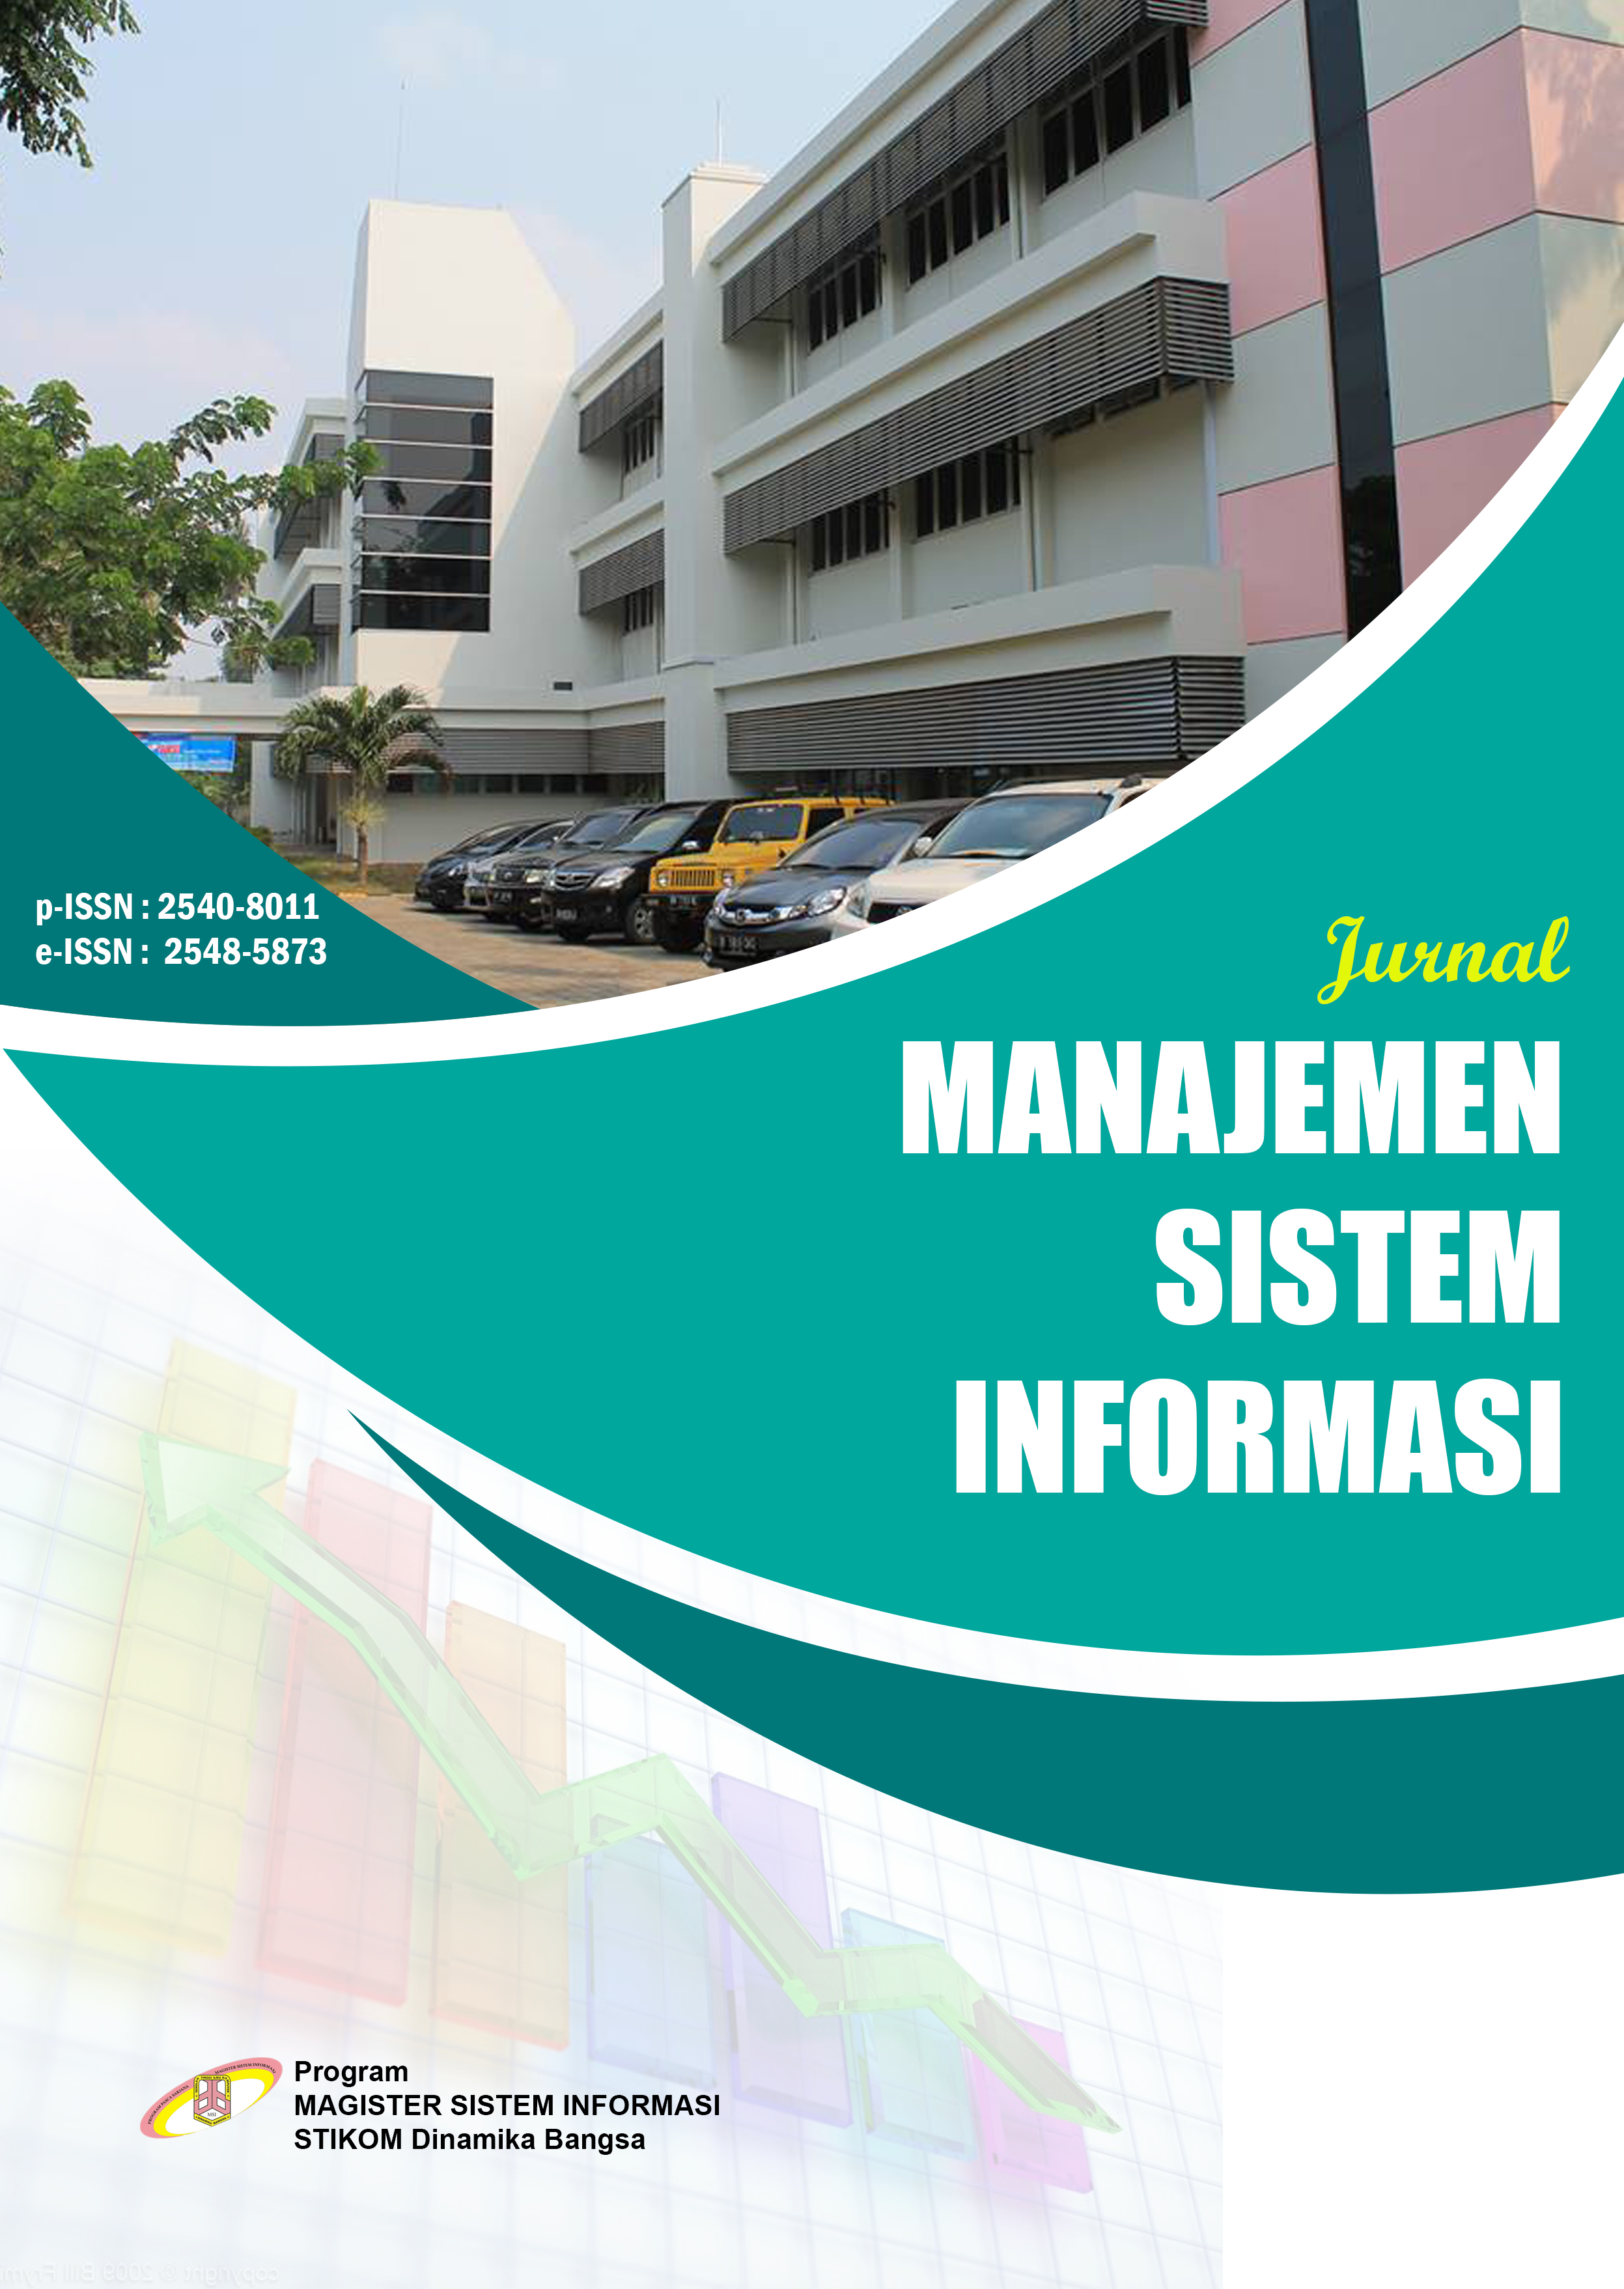 					Lihat Vol 4 No 2 (2019): Jurnal Manajemen Sistem Informasi
				